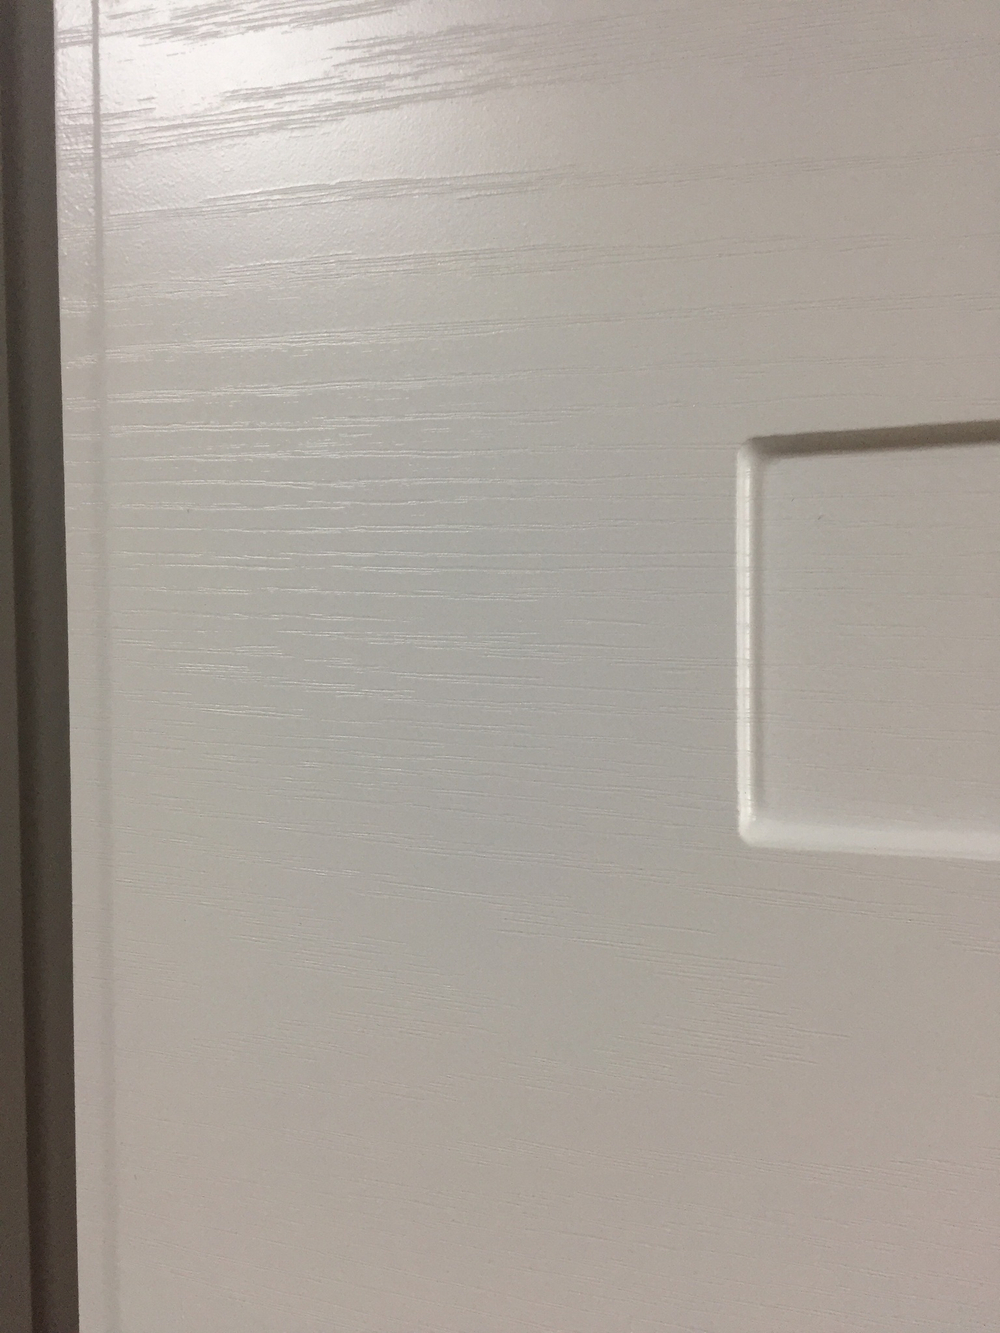 Входная металлическая дверь Лабиринт Classic (Классик) антик медь 14 - Дуб кантри белый горизонтальный